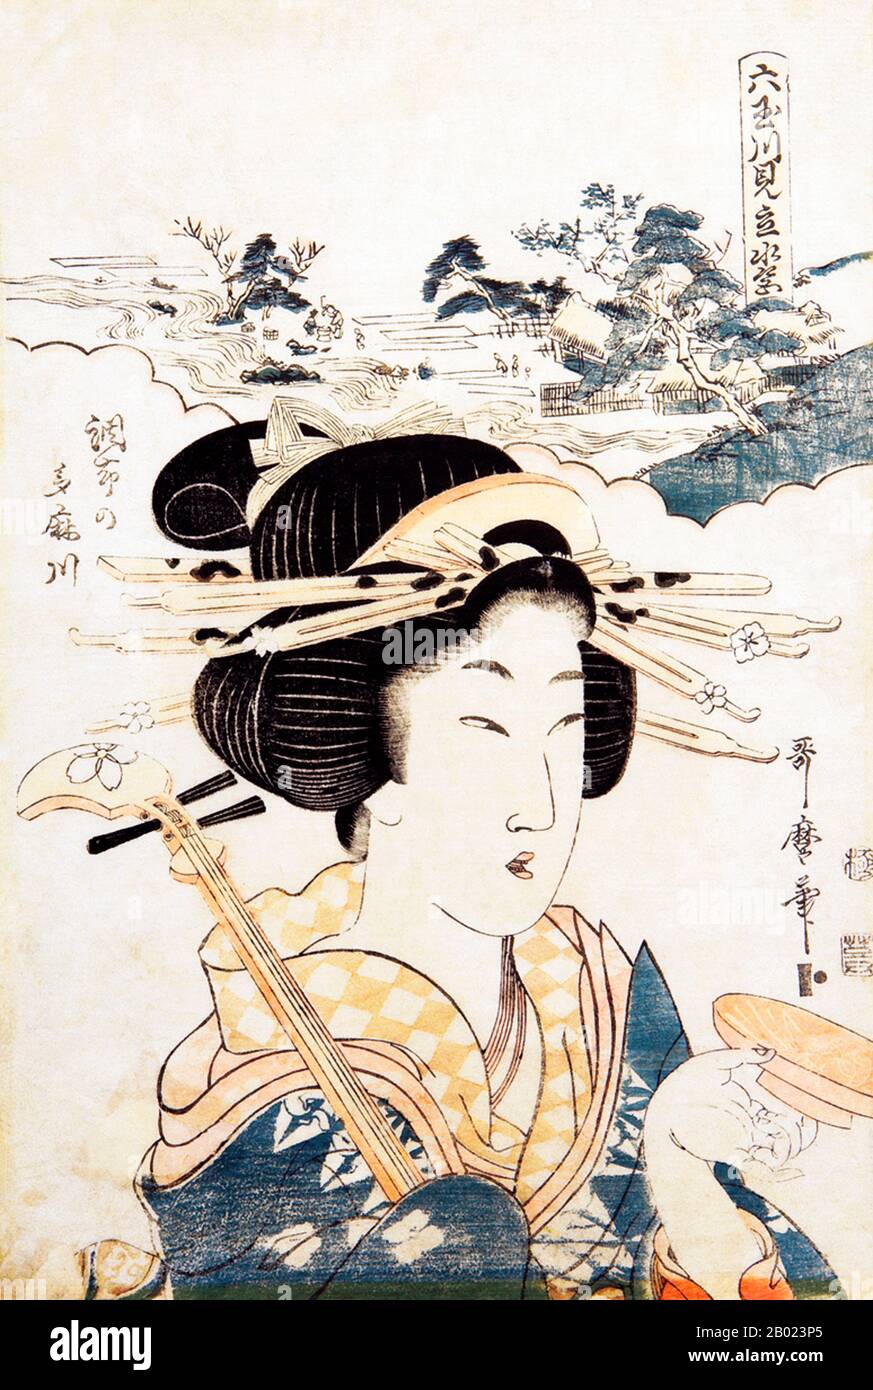 Kitagawa Utamaro (env. 1753 - 31 octobre 1806) était un peintre et graveur japonais, considéré comme l'un des plus grands artistes de gravures de bois (ukiyo-e). Il est surtout connu pour ses études magistralement composées de femmes, connues sous le nom de bijinga. Il a également produit des études sur la nature, notamment des livres illustrés d'insectes. Après la mort d'Utamaro, son élève, Koikawa Shunchō, a continué à produire des reproductions dans le style de son mentor et a pris la relève du gō, Utamaro, jusqu'en 1820. Ces tirages, produits au cours de cette période de quatorze ans comme si Utamaro était l'artiste, sont maintenant appelés l'œuvre De Ut Banque D'Images